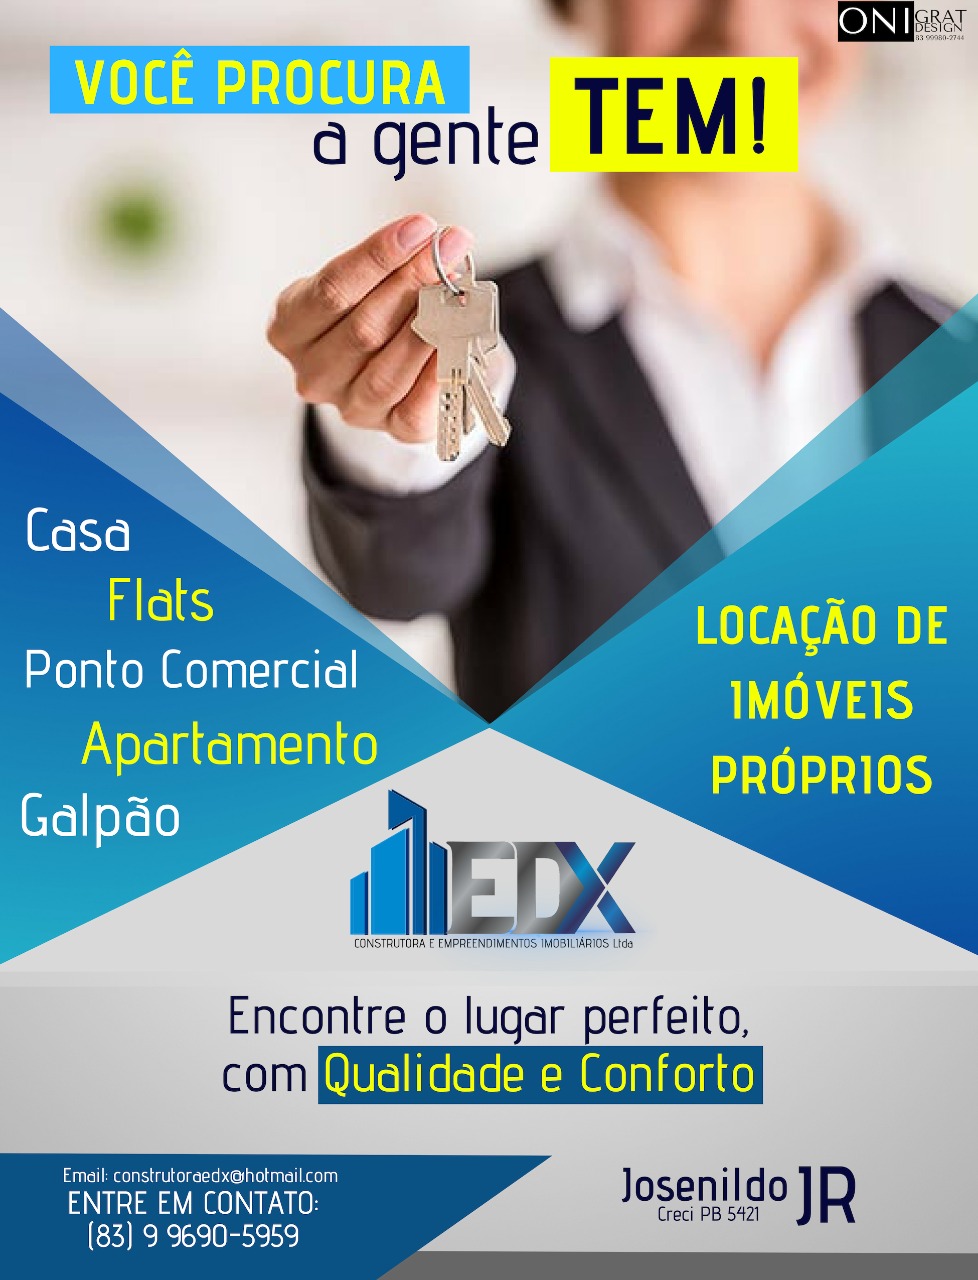 WhatsApp-Image-2019-07-31-at-08.53.26 Em Monteiro: EDX Aluguel de imóveis próprios.